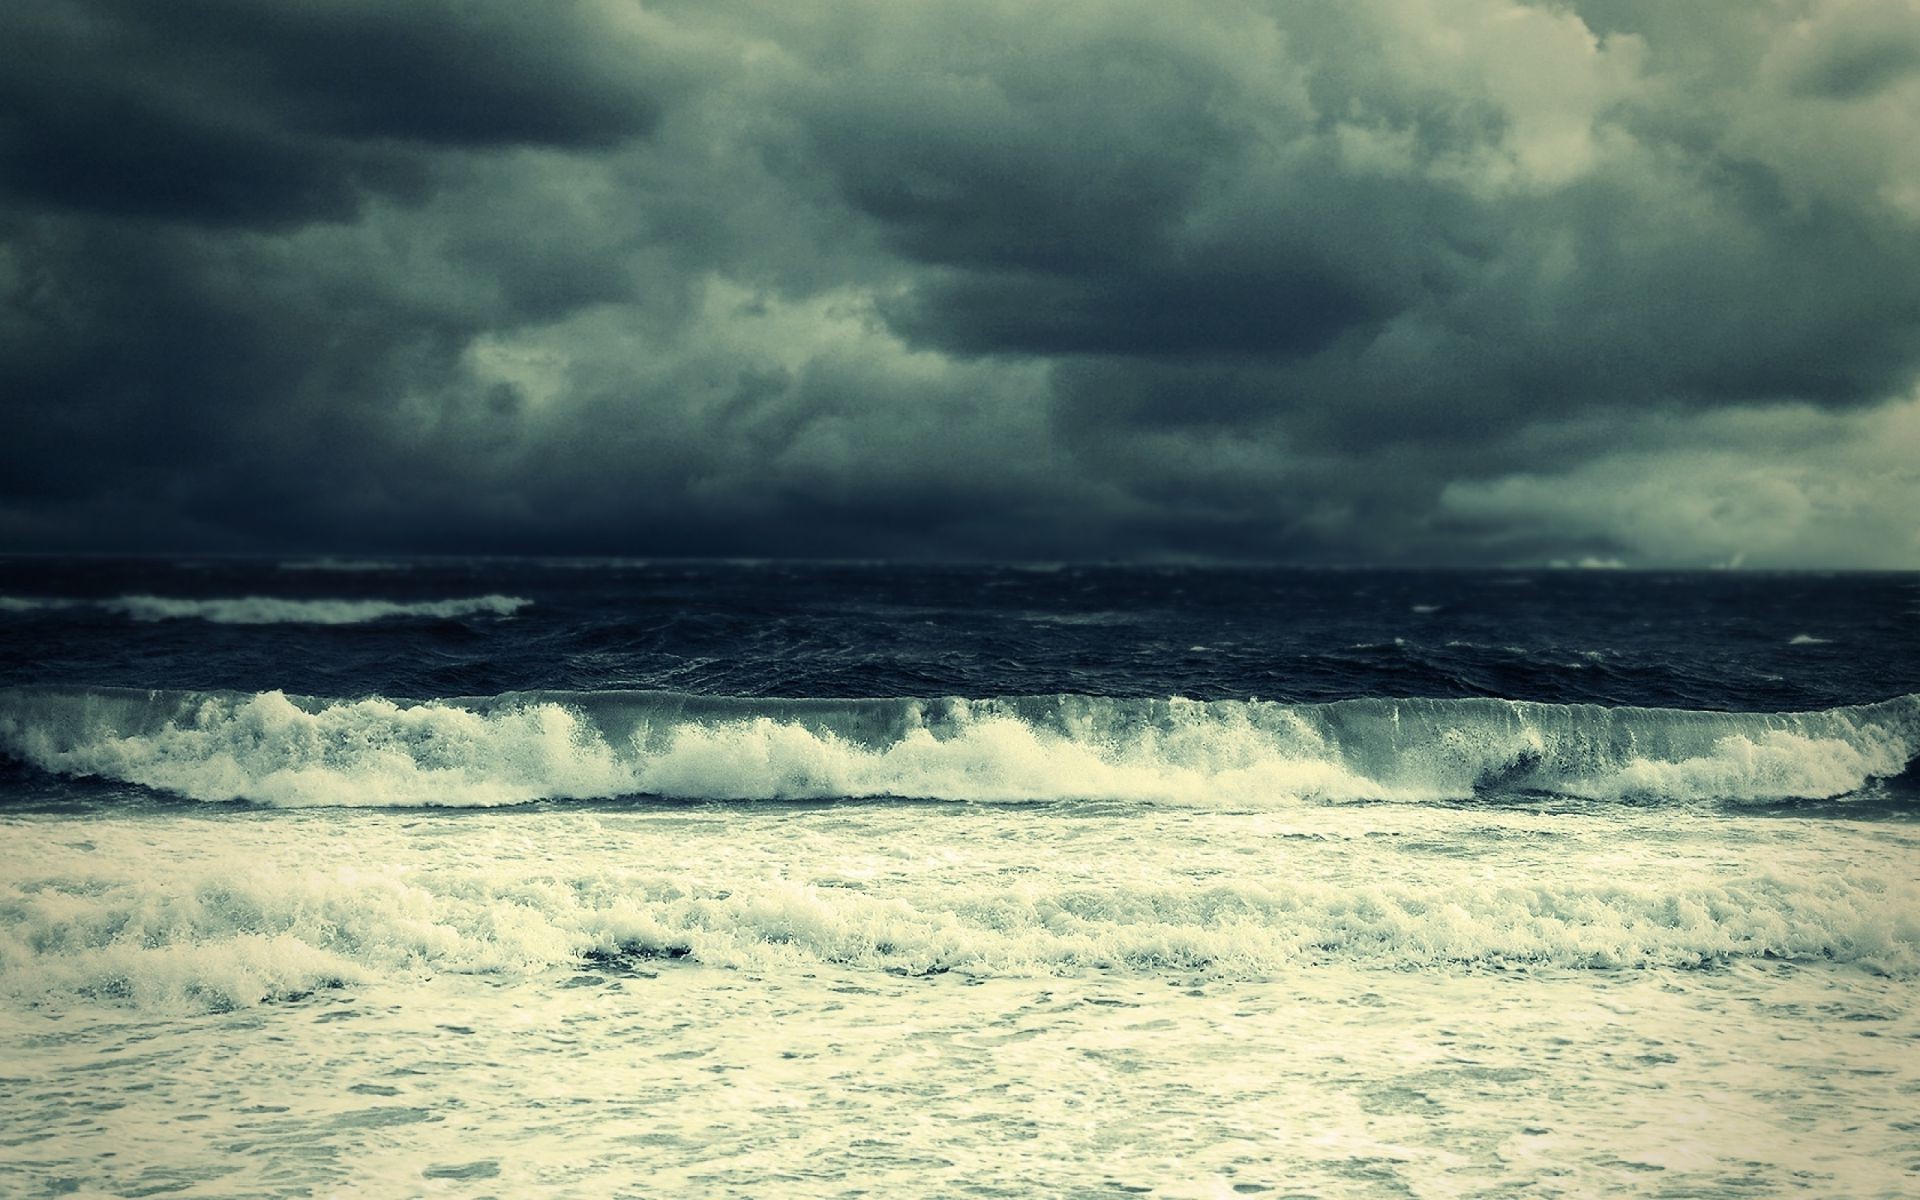 вода шторм море океан пляж пейзаж прибой пейзаж природа небо погода путешествия моря песок облако лето